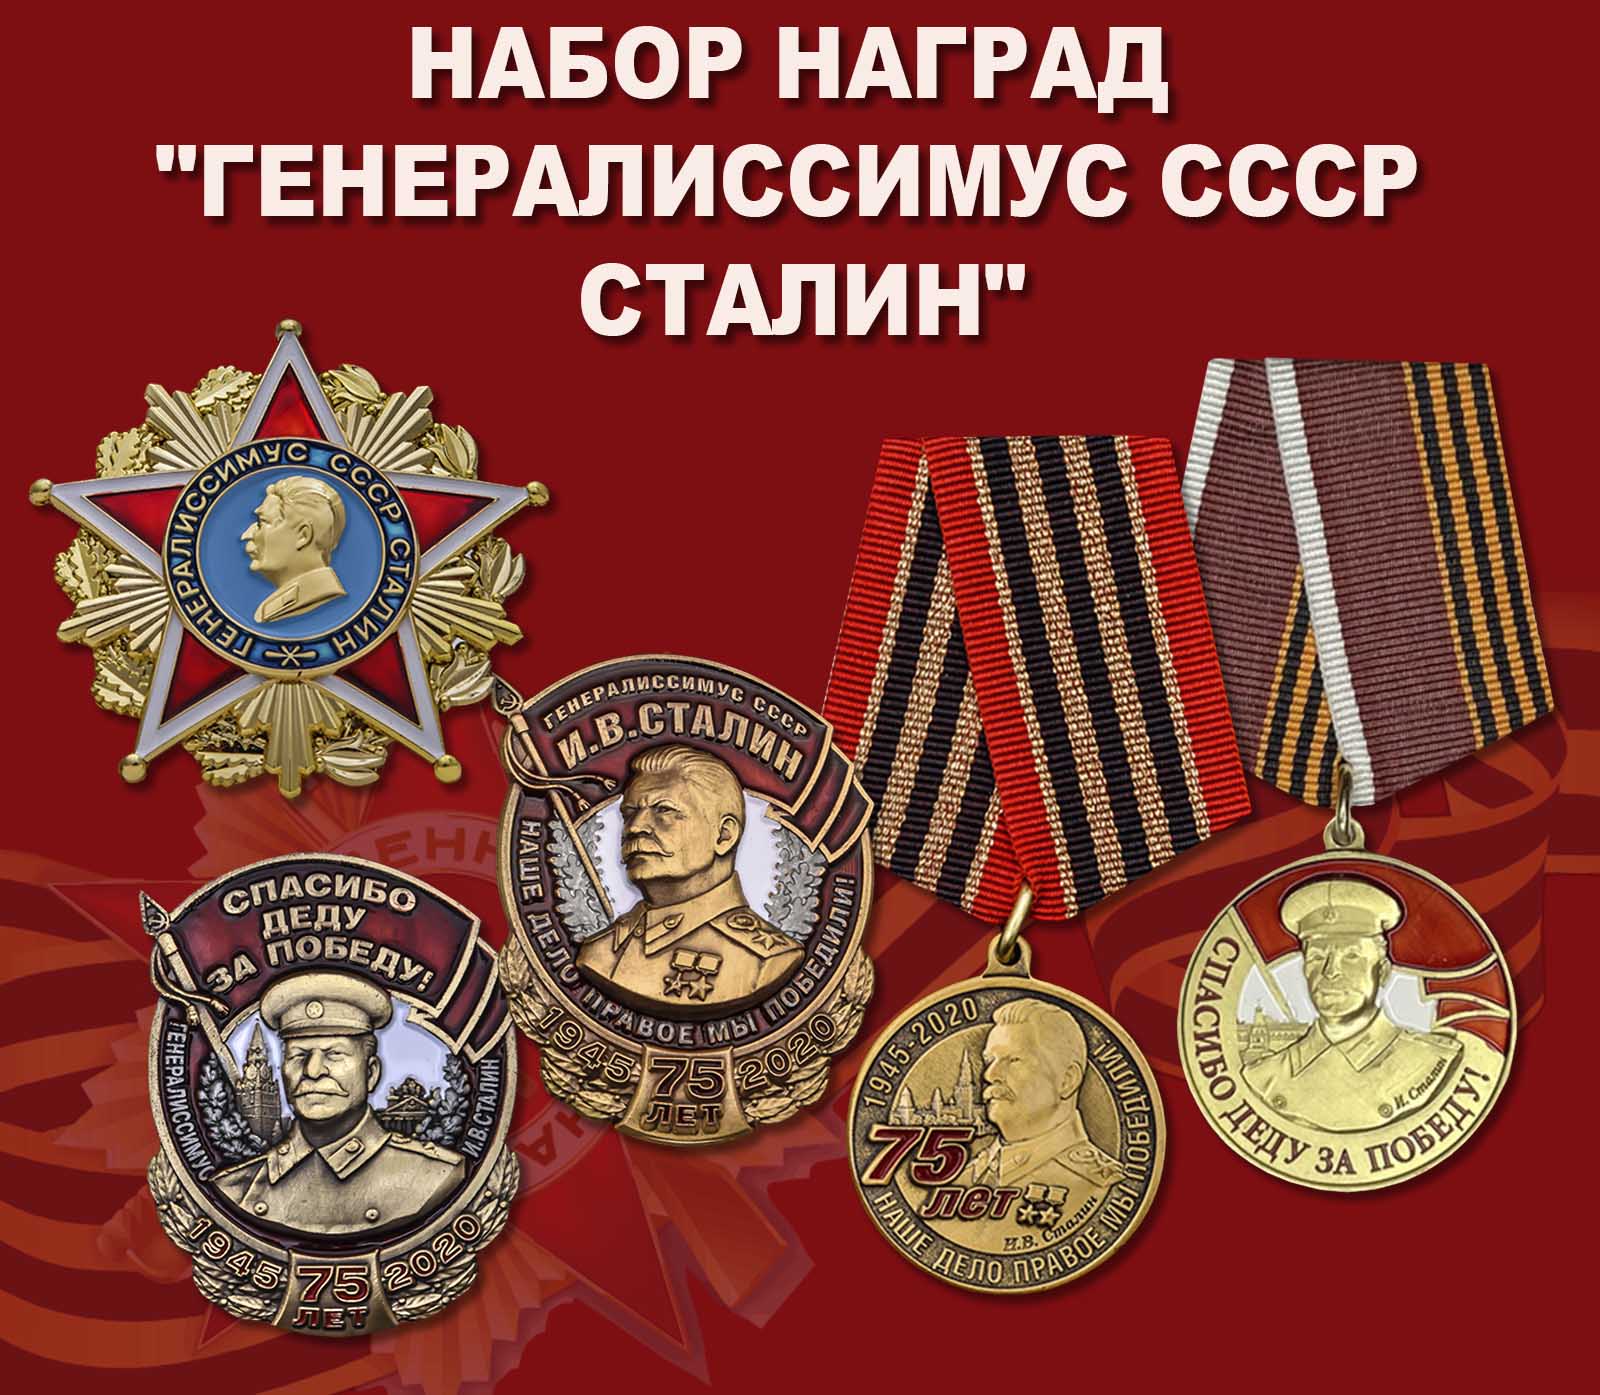 Купить набор наград "Генералиссимус СССР Сталин"